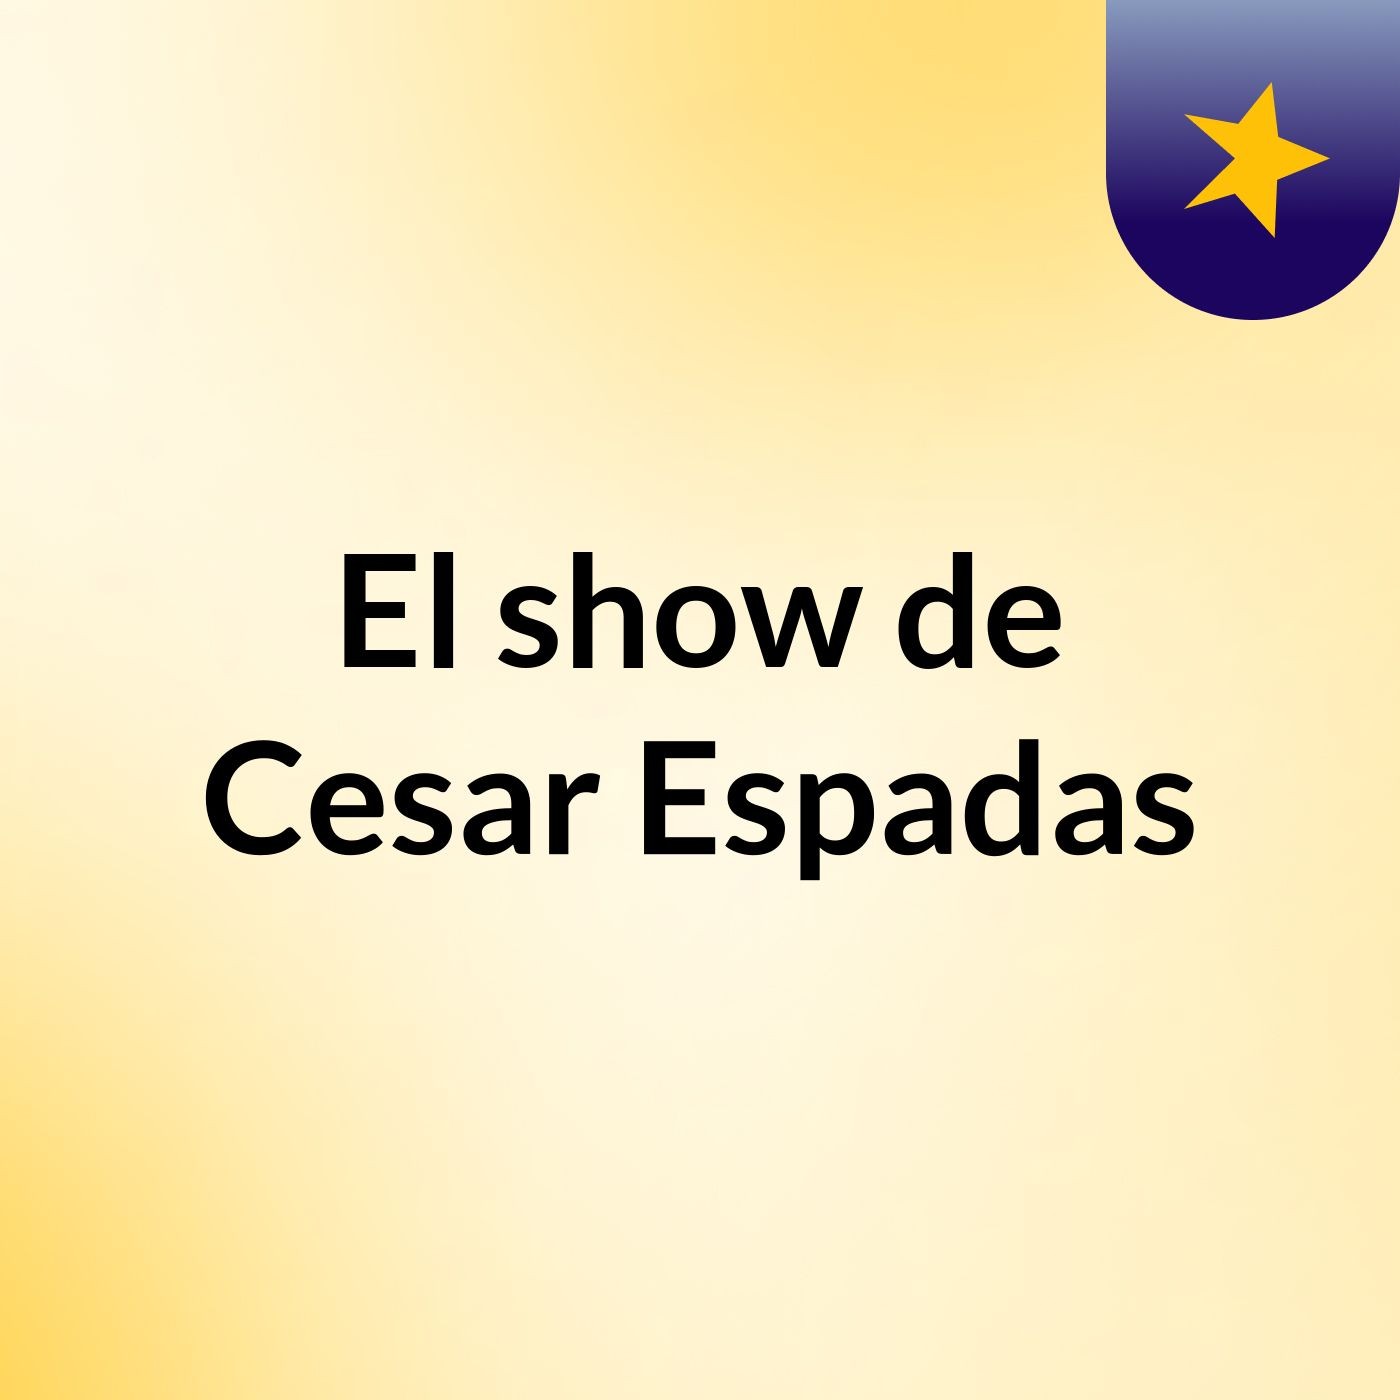 Episodio 4 - El show de Cesar Espadas